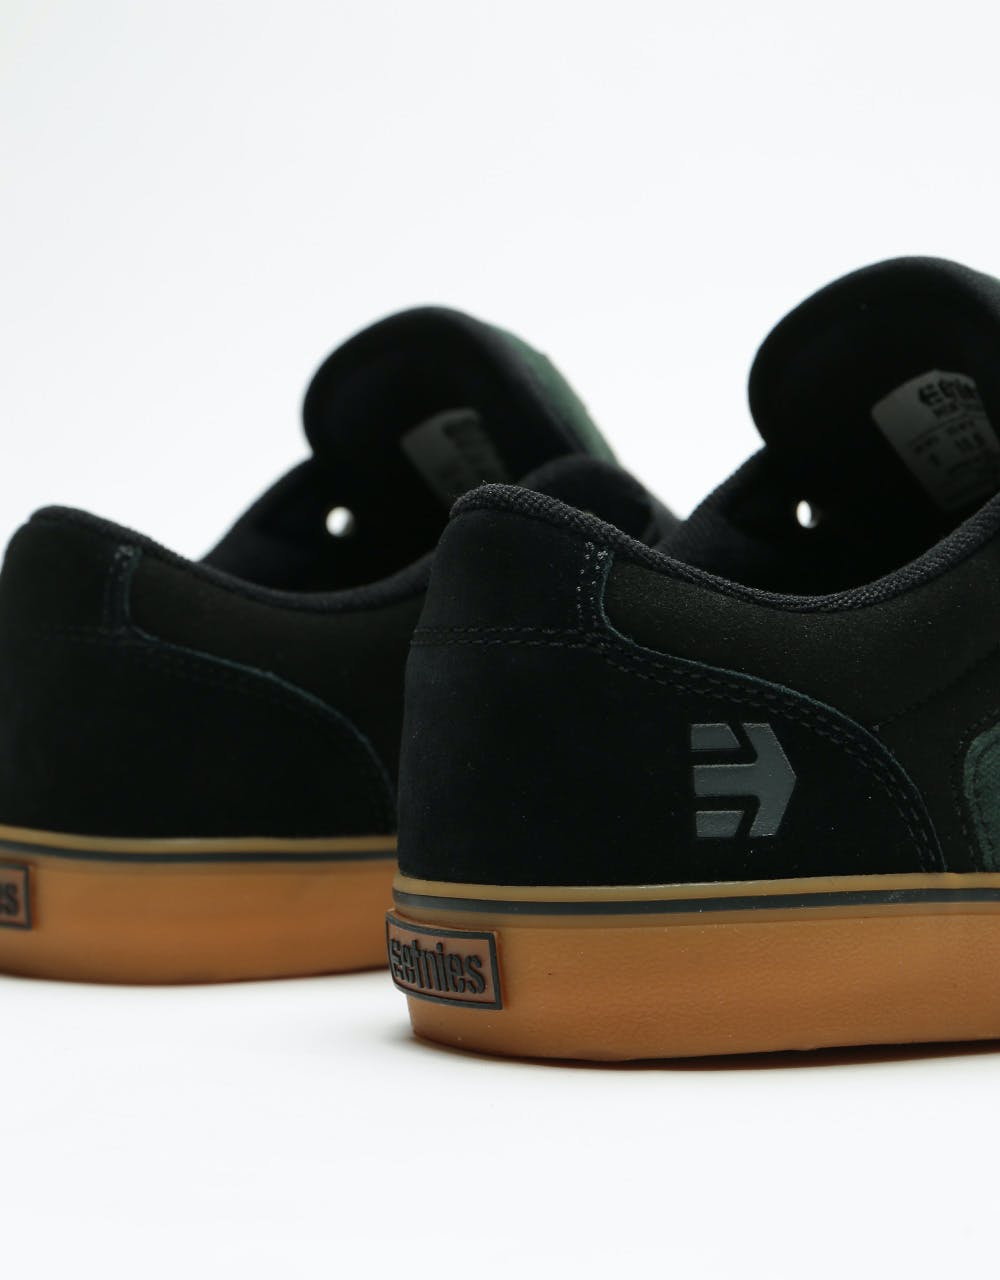 Etnies Barge LS Skate Shoes - Black/Green/Gum